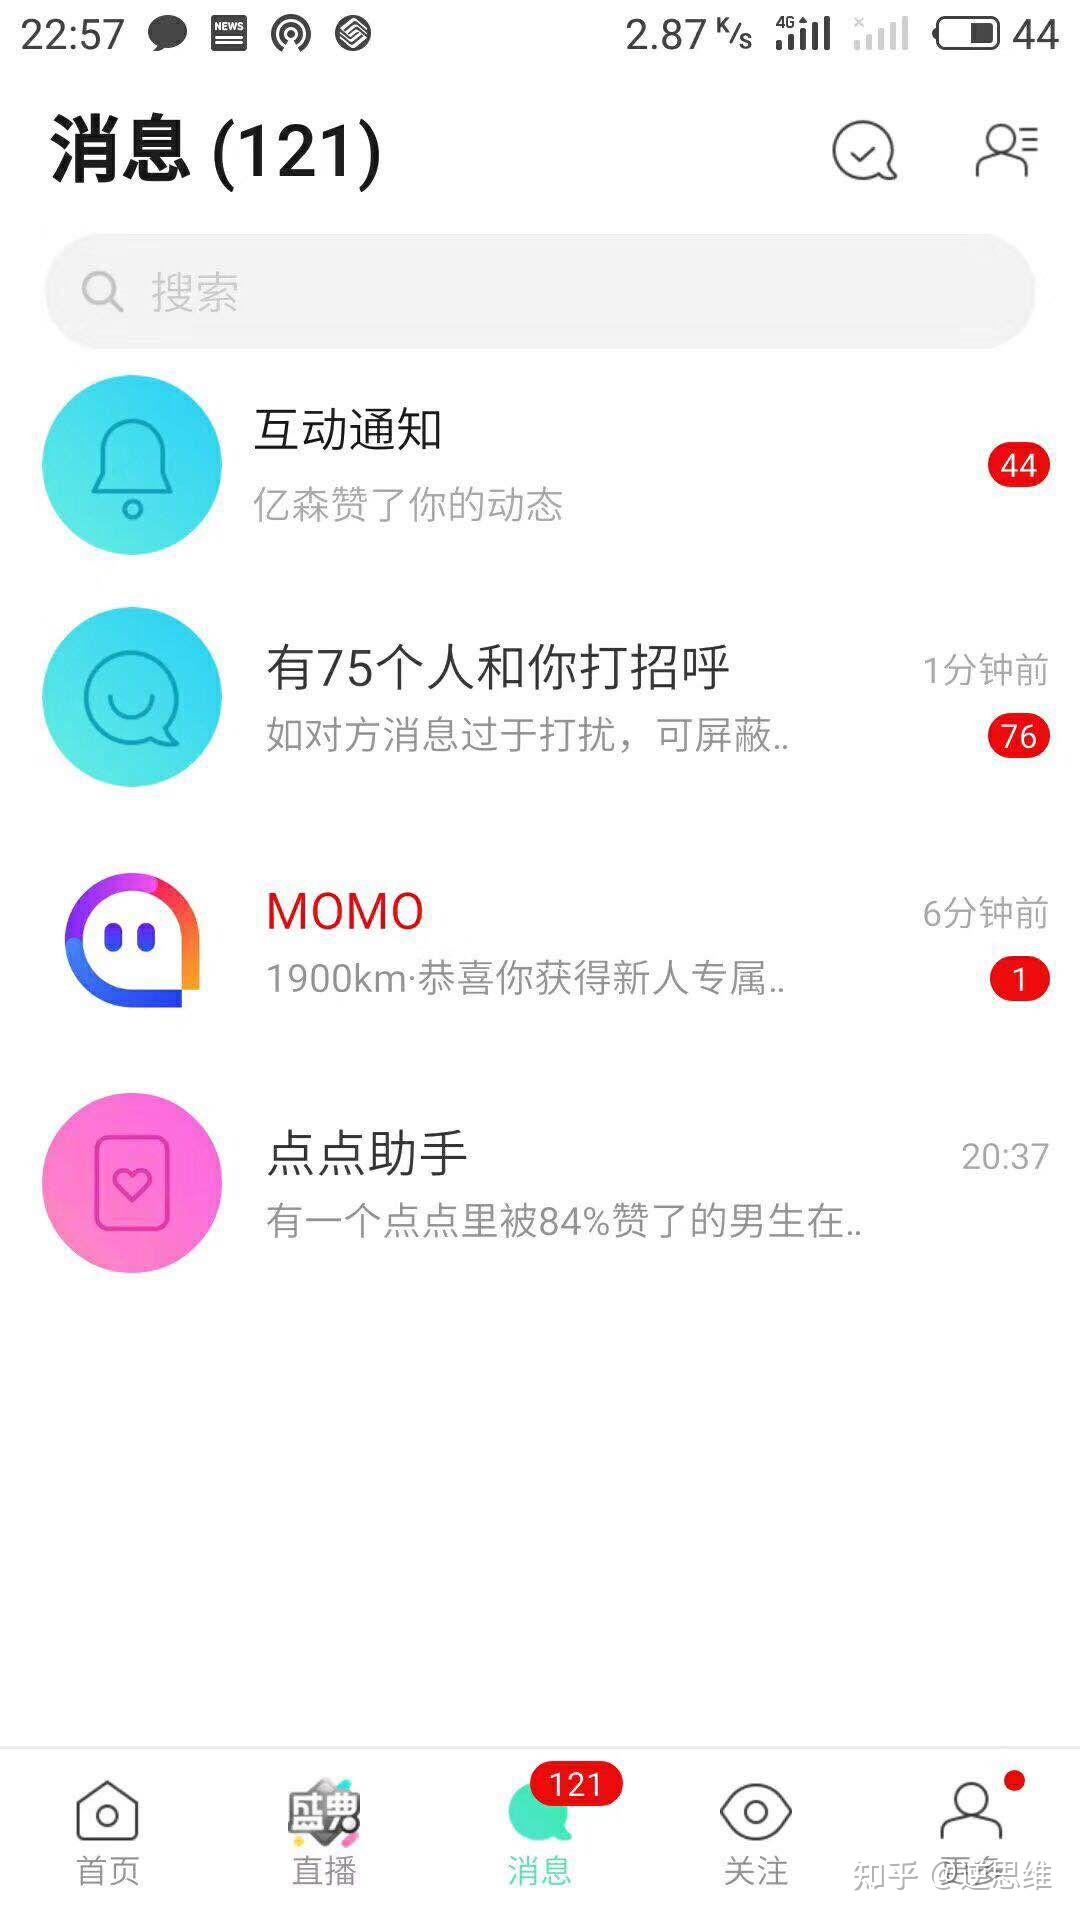 陌陌发布全新LOGO 大力发展视频社交-搜狐